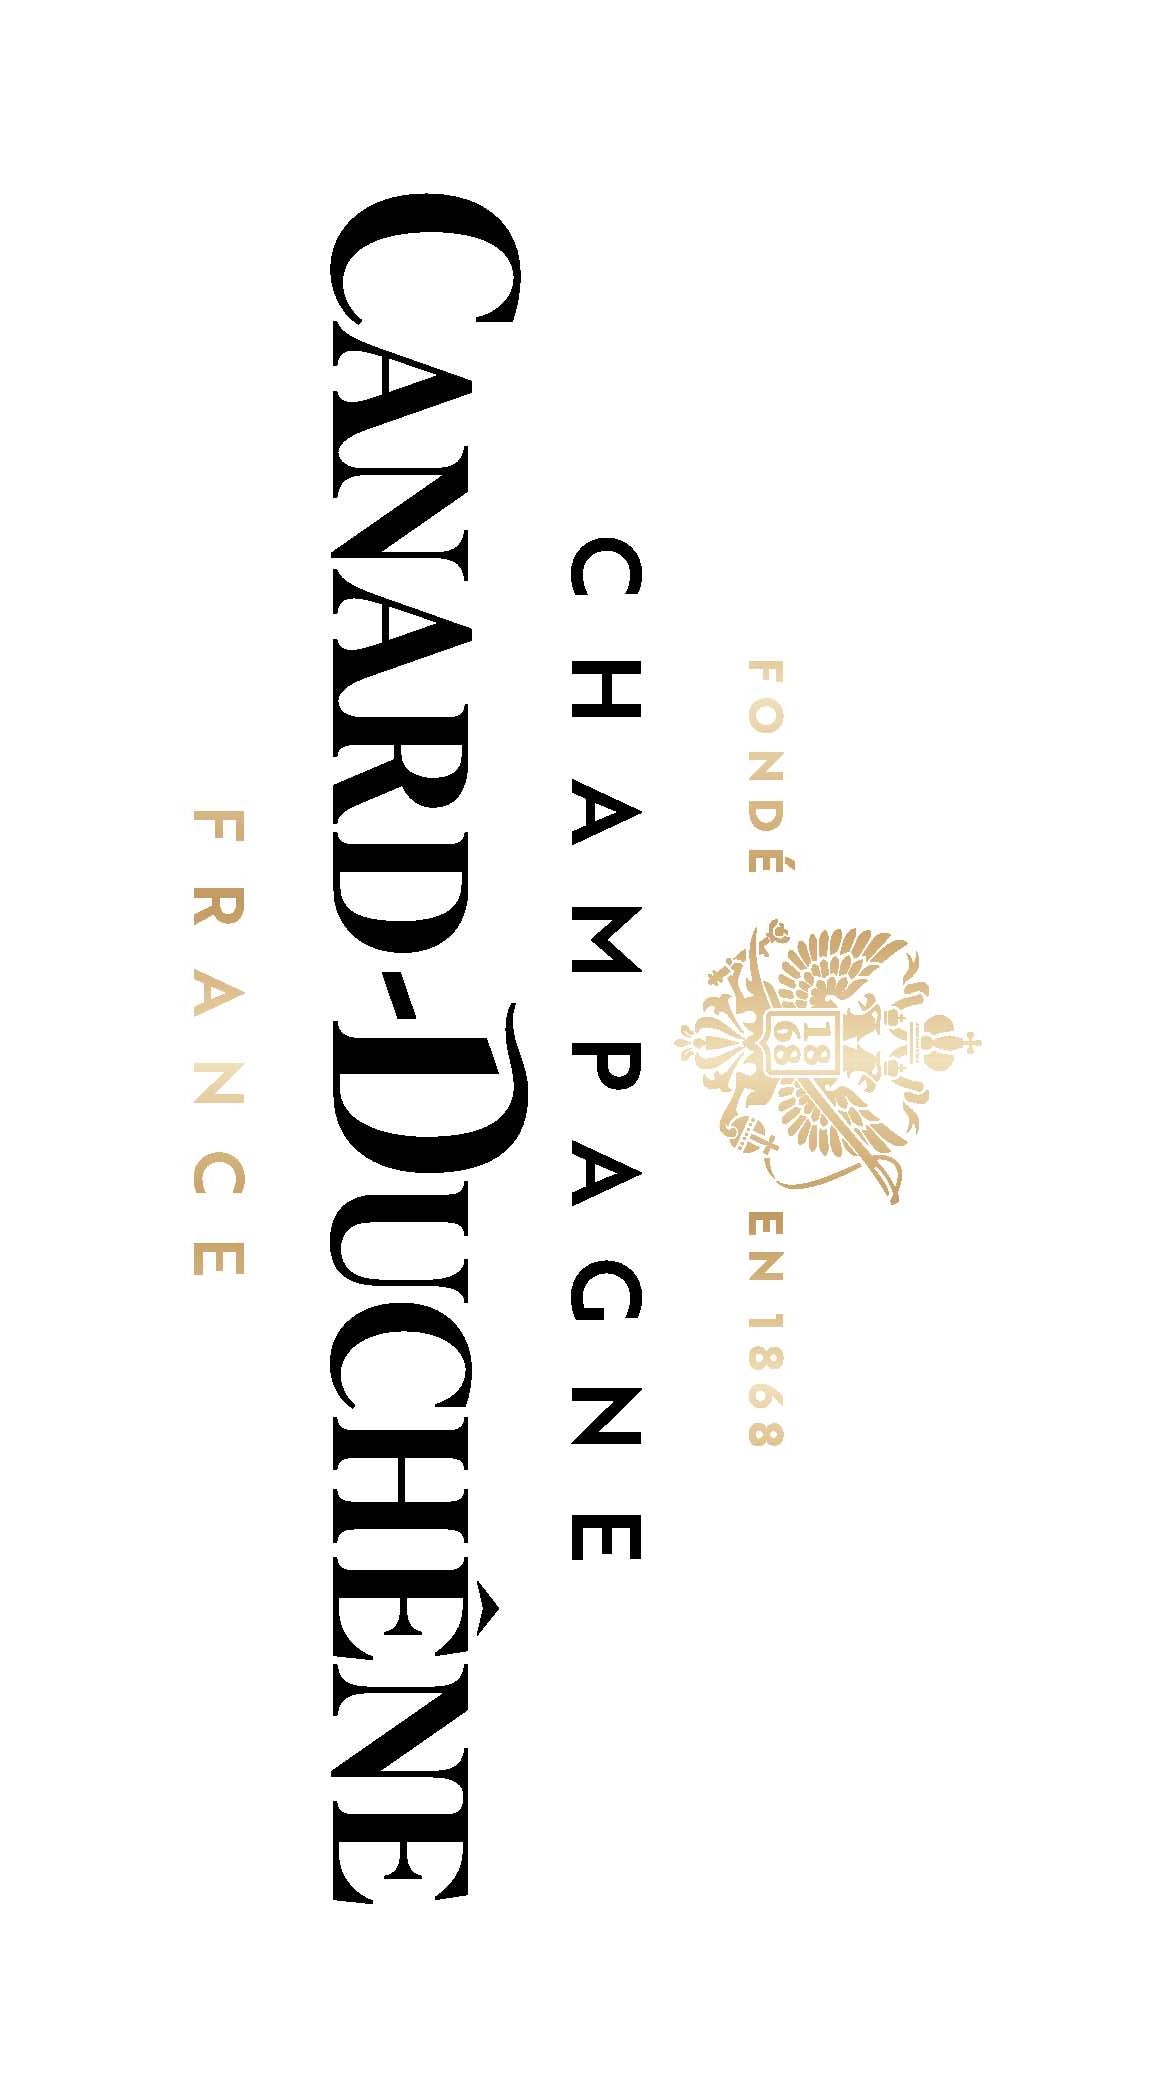 Шампанское canard duchene. Канард ДУЧЕНЕ шампанское. Логотип шампанского. Шампанский logo. Canard надпись.